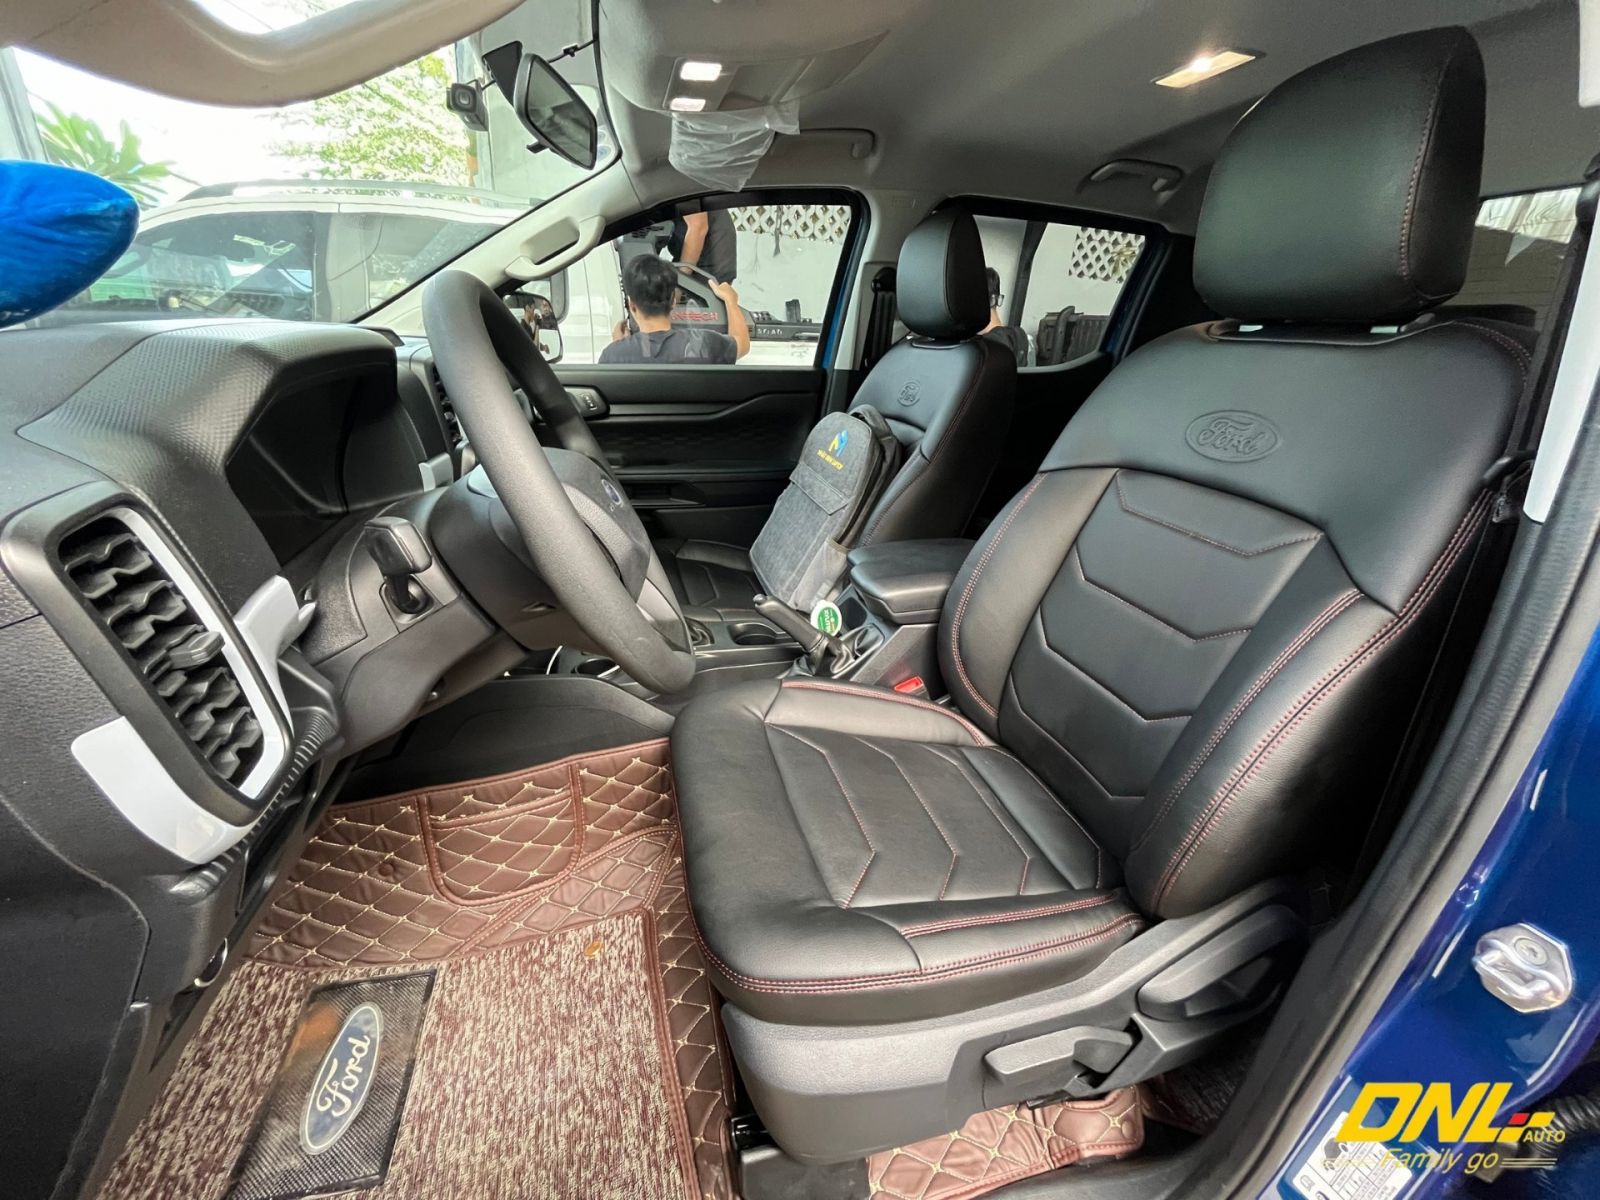 Bọc ghế da xe bán tải Ford Ranger Nextgen 2023 tại DNL Auto